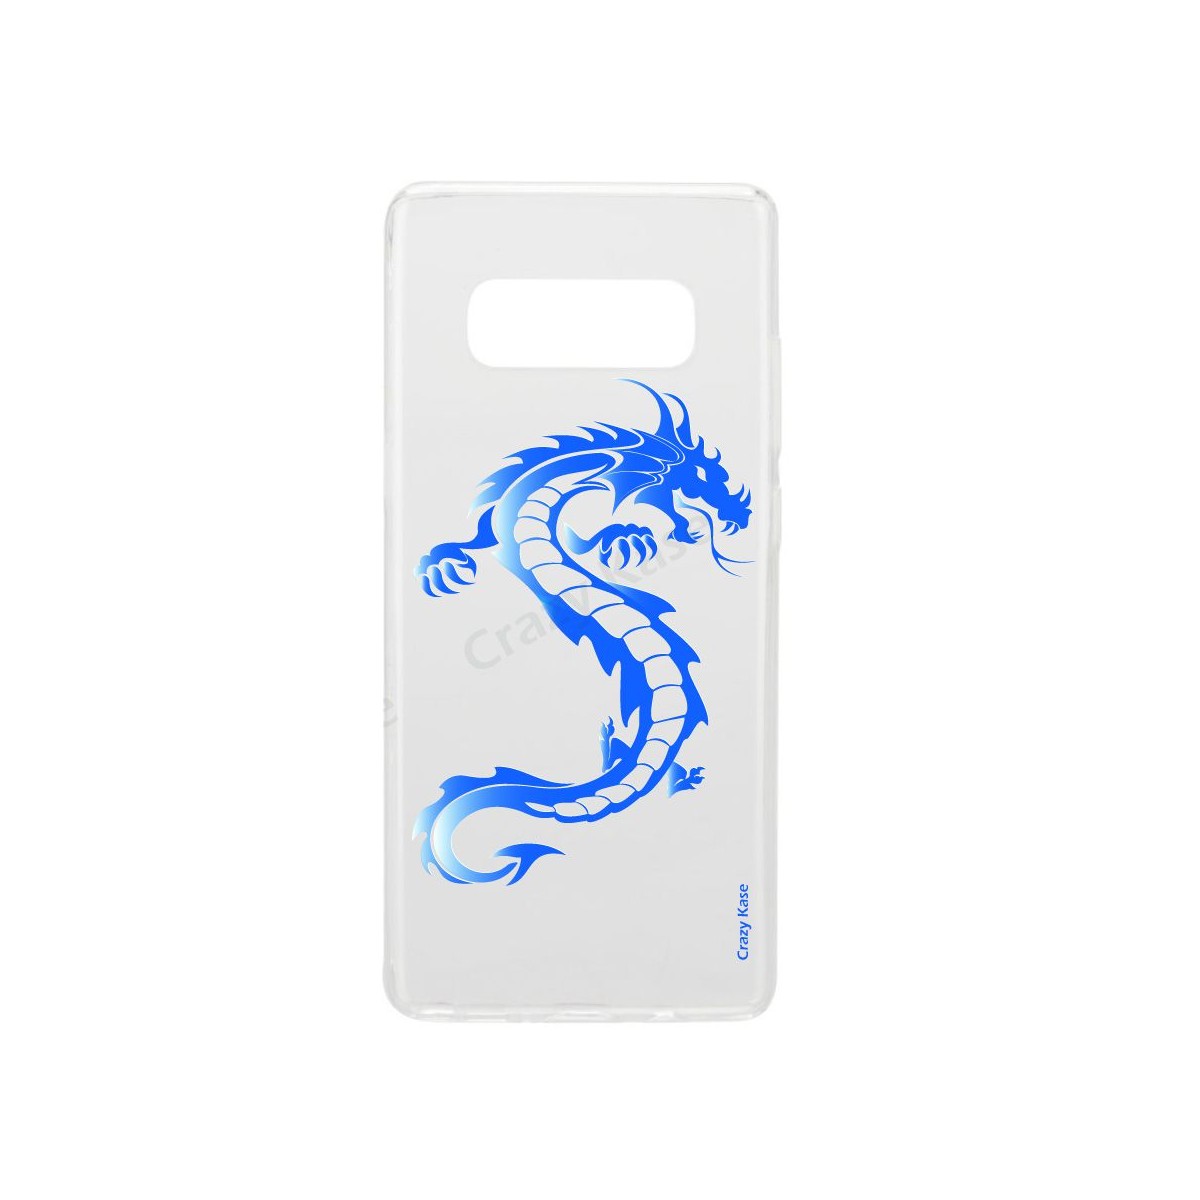 Coque Galaxy S10 Plus souple Dragon bleu -  Crazy Kase